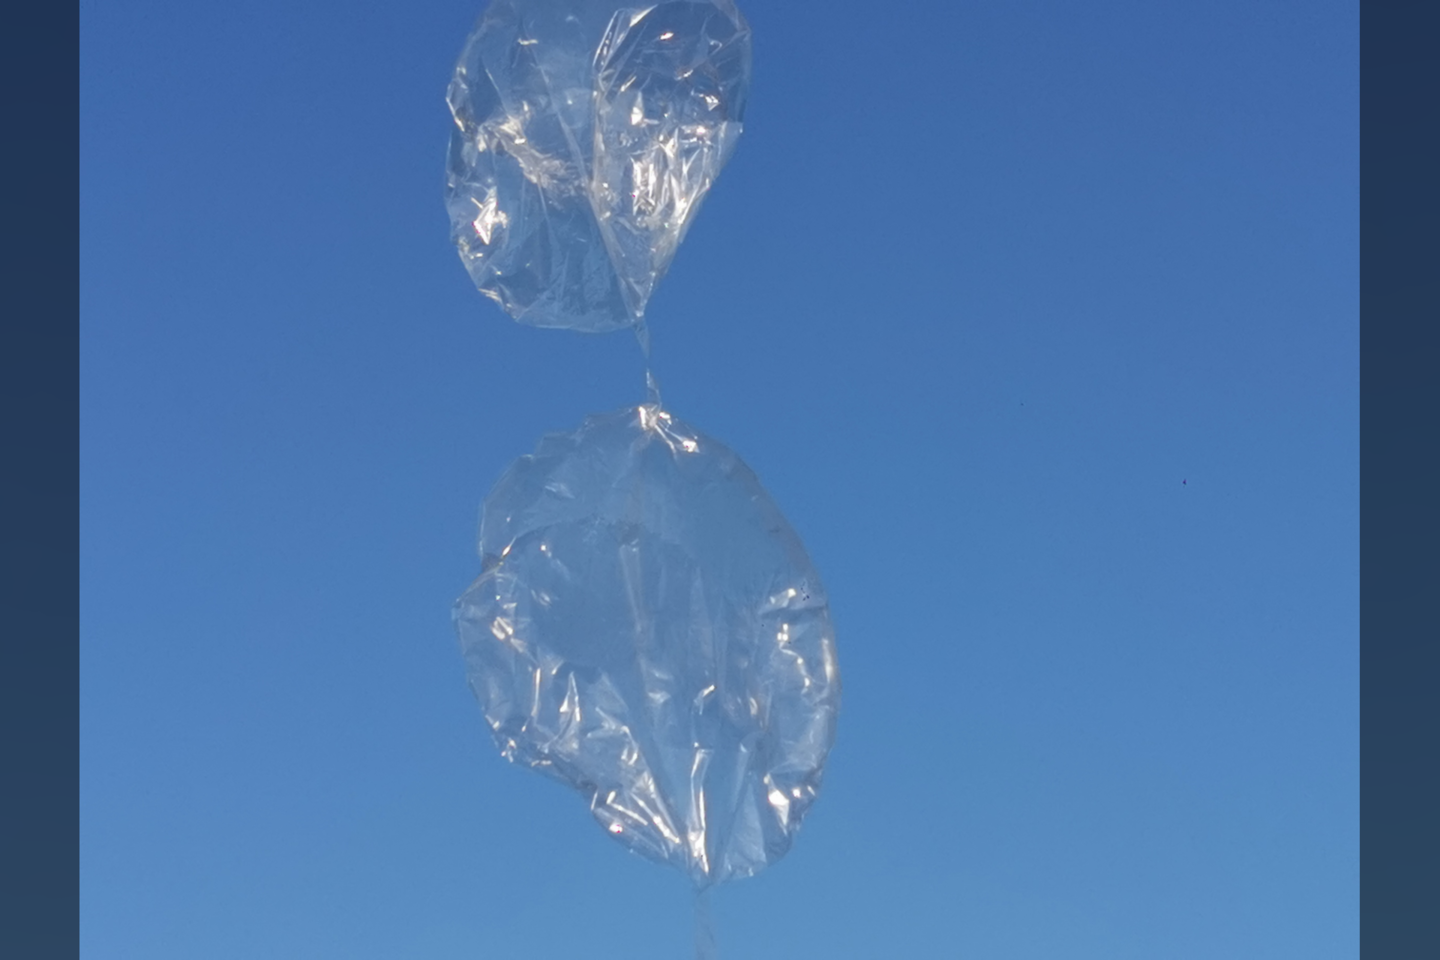   Šaltoką gruodžio rytą iš pievelės šalia Geležinio vilko gatvės sėkmingai pakilo balionų sistema LKB-1, gabenanti „Arduino“ kompiuterį su radijo švyturėliu ir saulės baterijų moduliu.<br> A. Rutkausko nuotr.